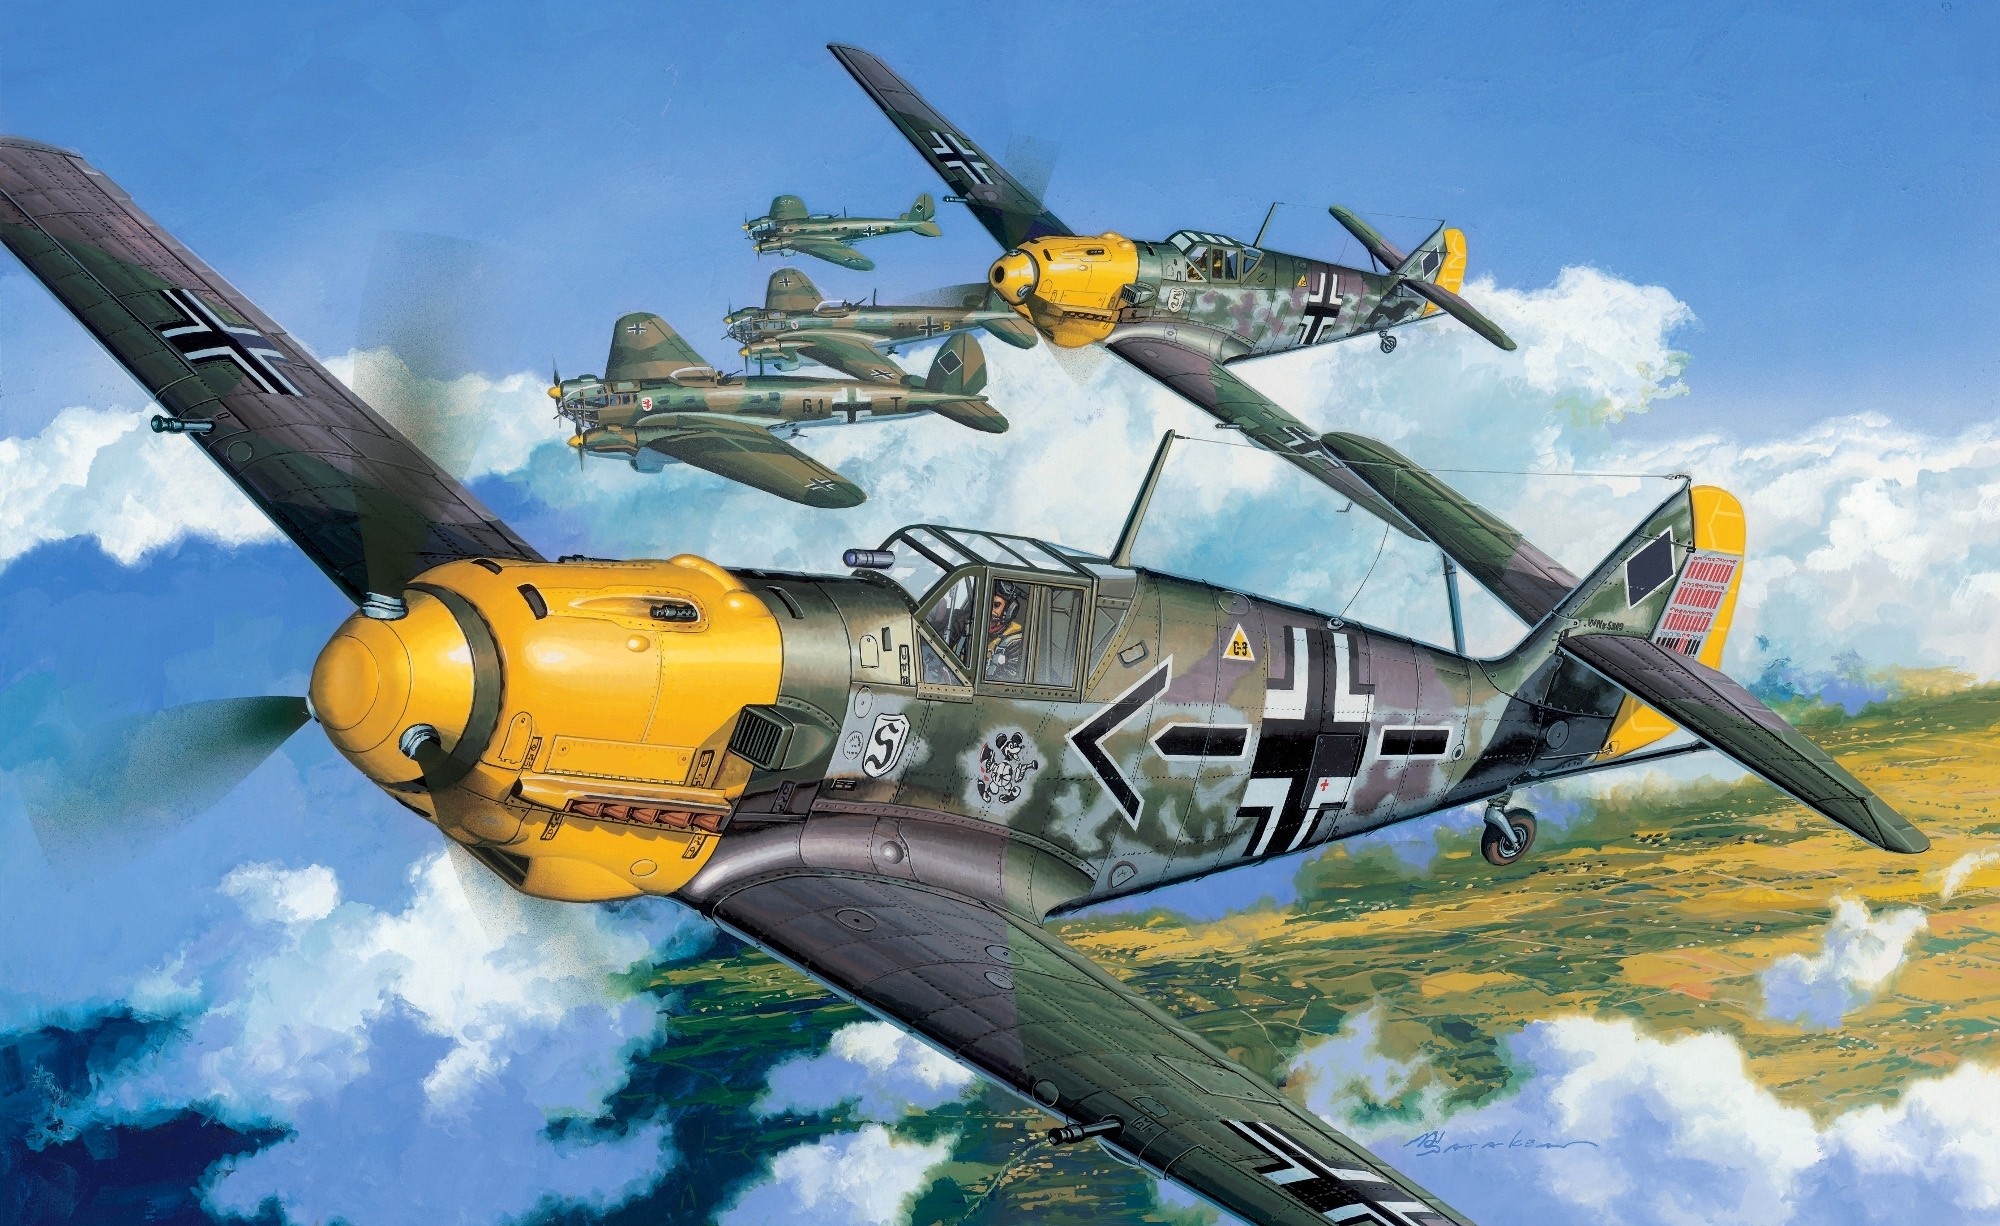 2000x1226, Luftwaffe - Messerschmitt Bf 109 E 3 - HD Wallpaper 